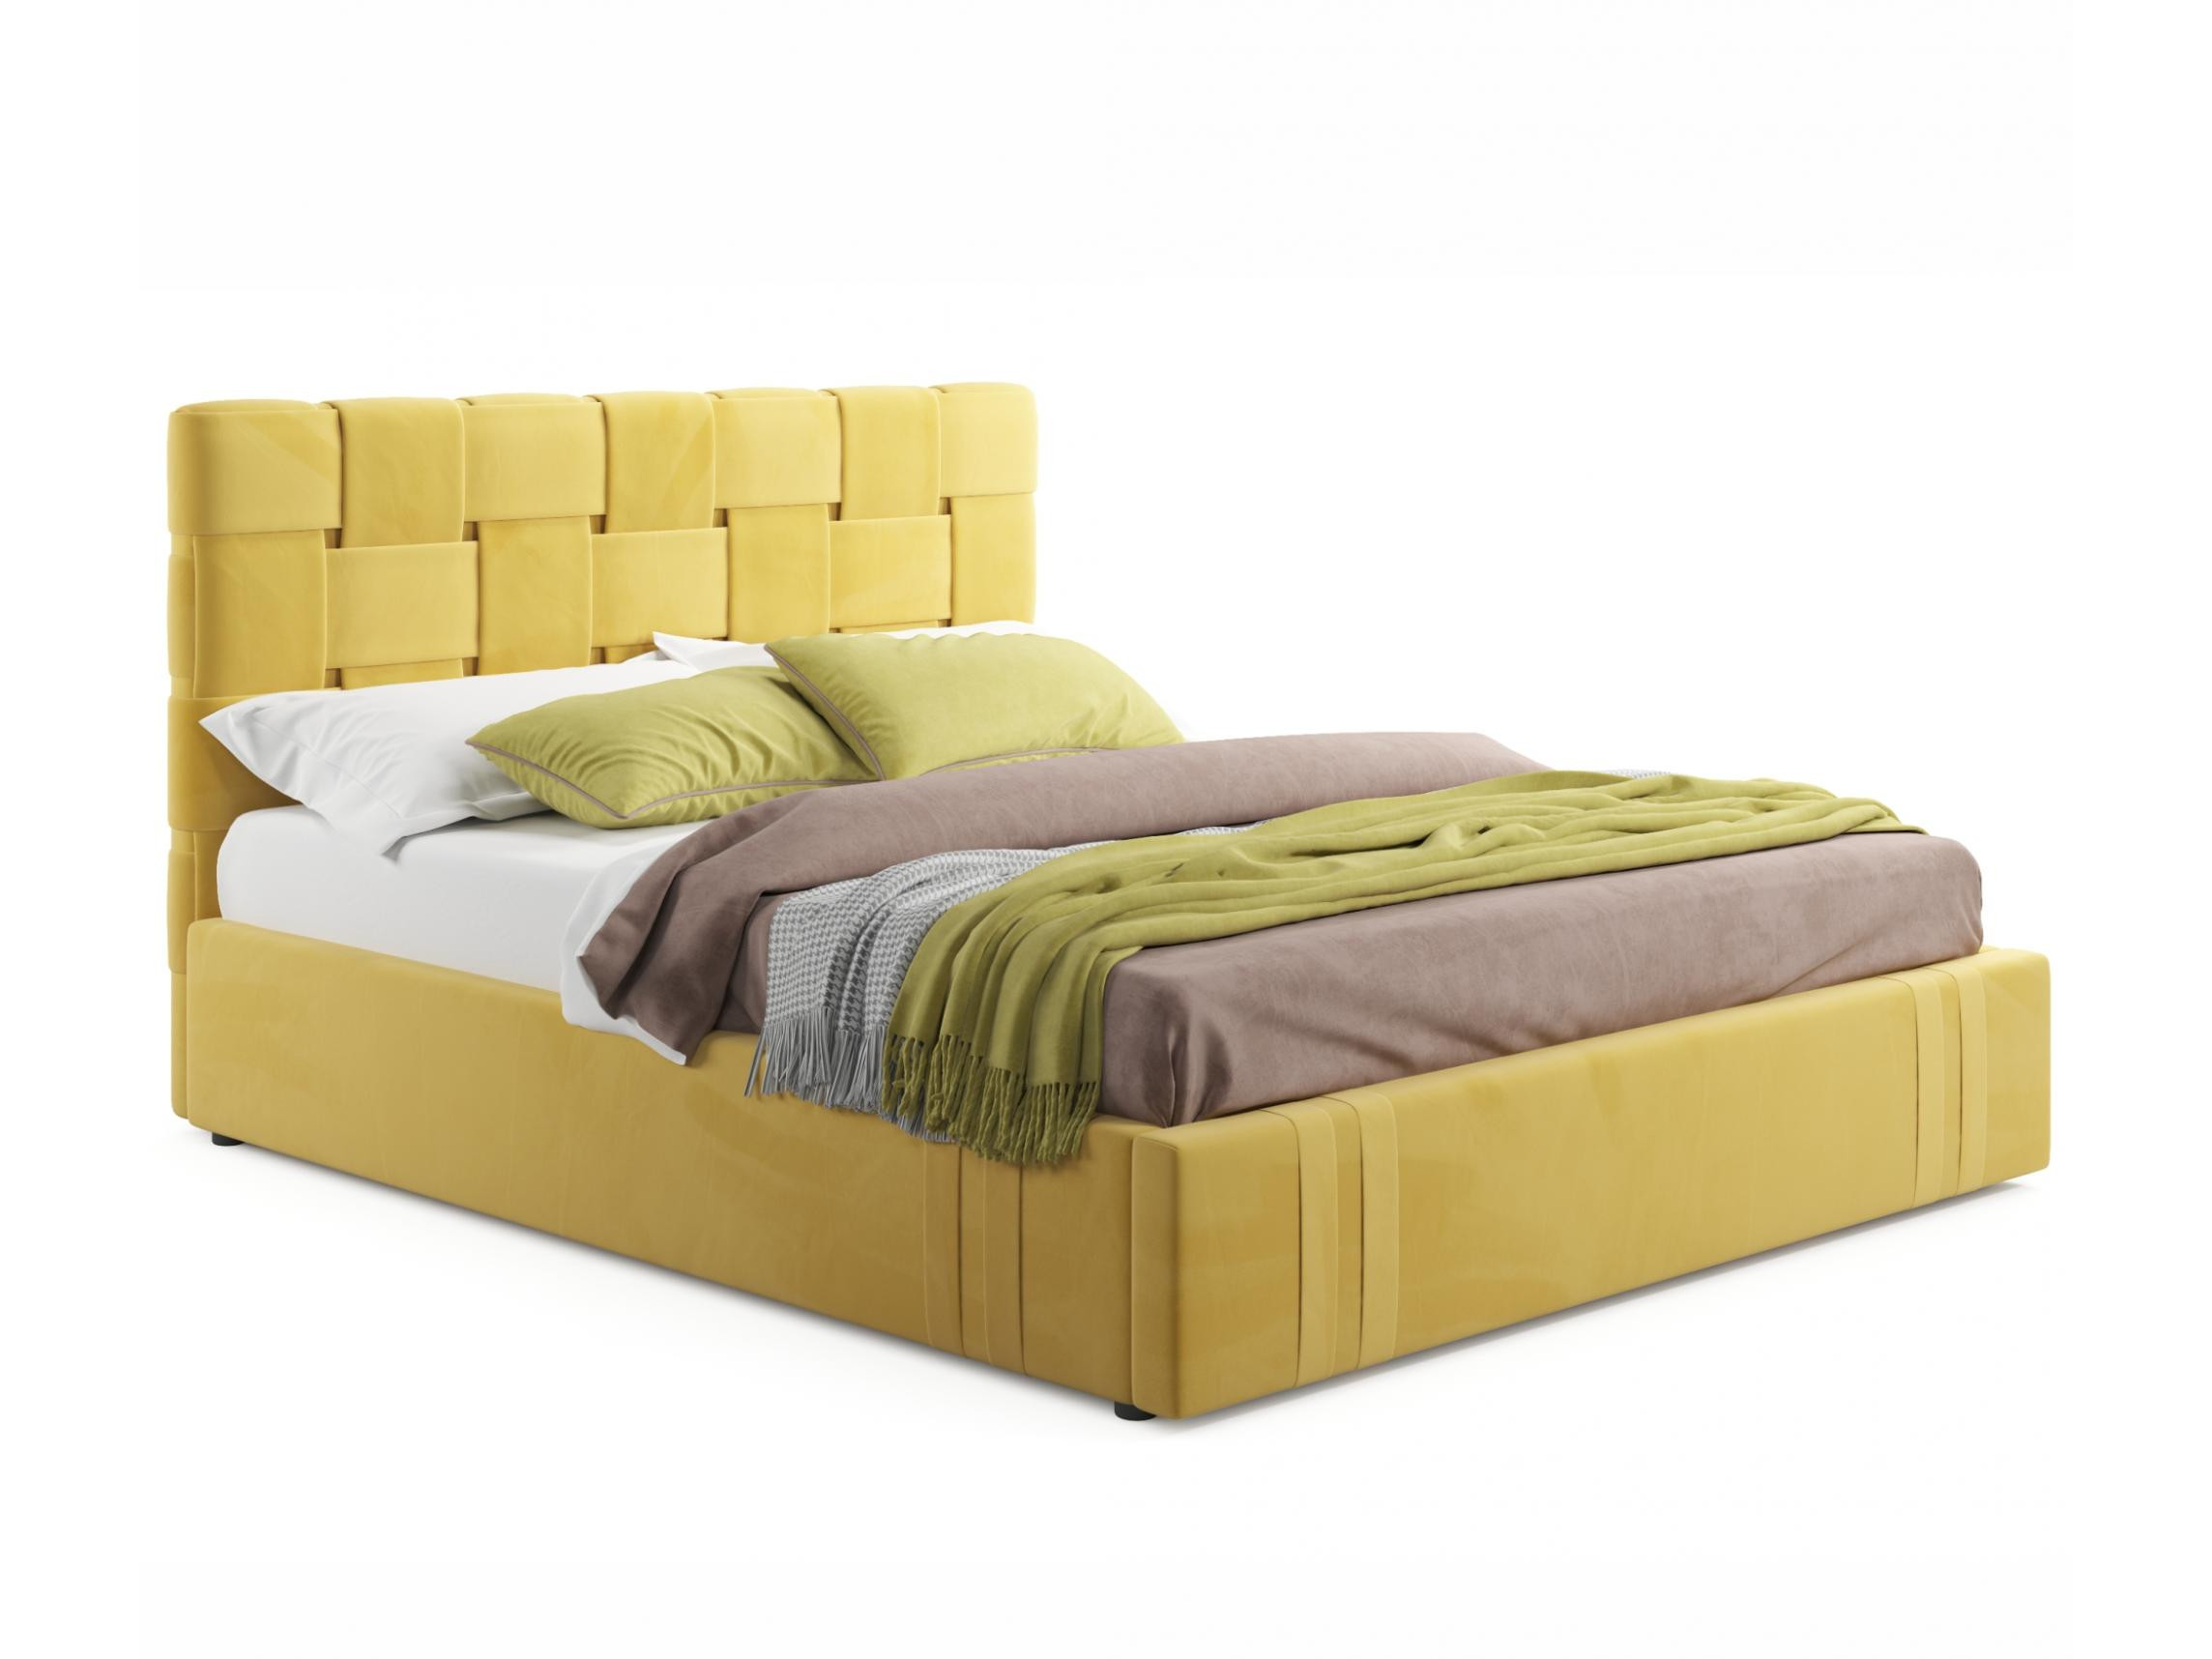 Мягкая кровать Tiffany 1600 желтая с ортопедическим основанием с матрасом ГОСТ желтый, Желтый, Велюр, ДСП мягкая кровать ameli 1600 желтая с ортопедическим основанием желтый желтый велюр дсп